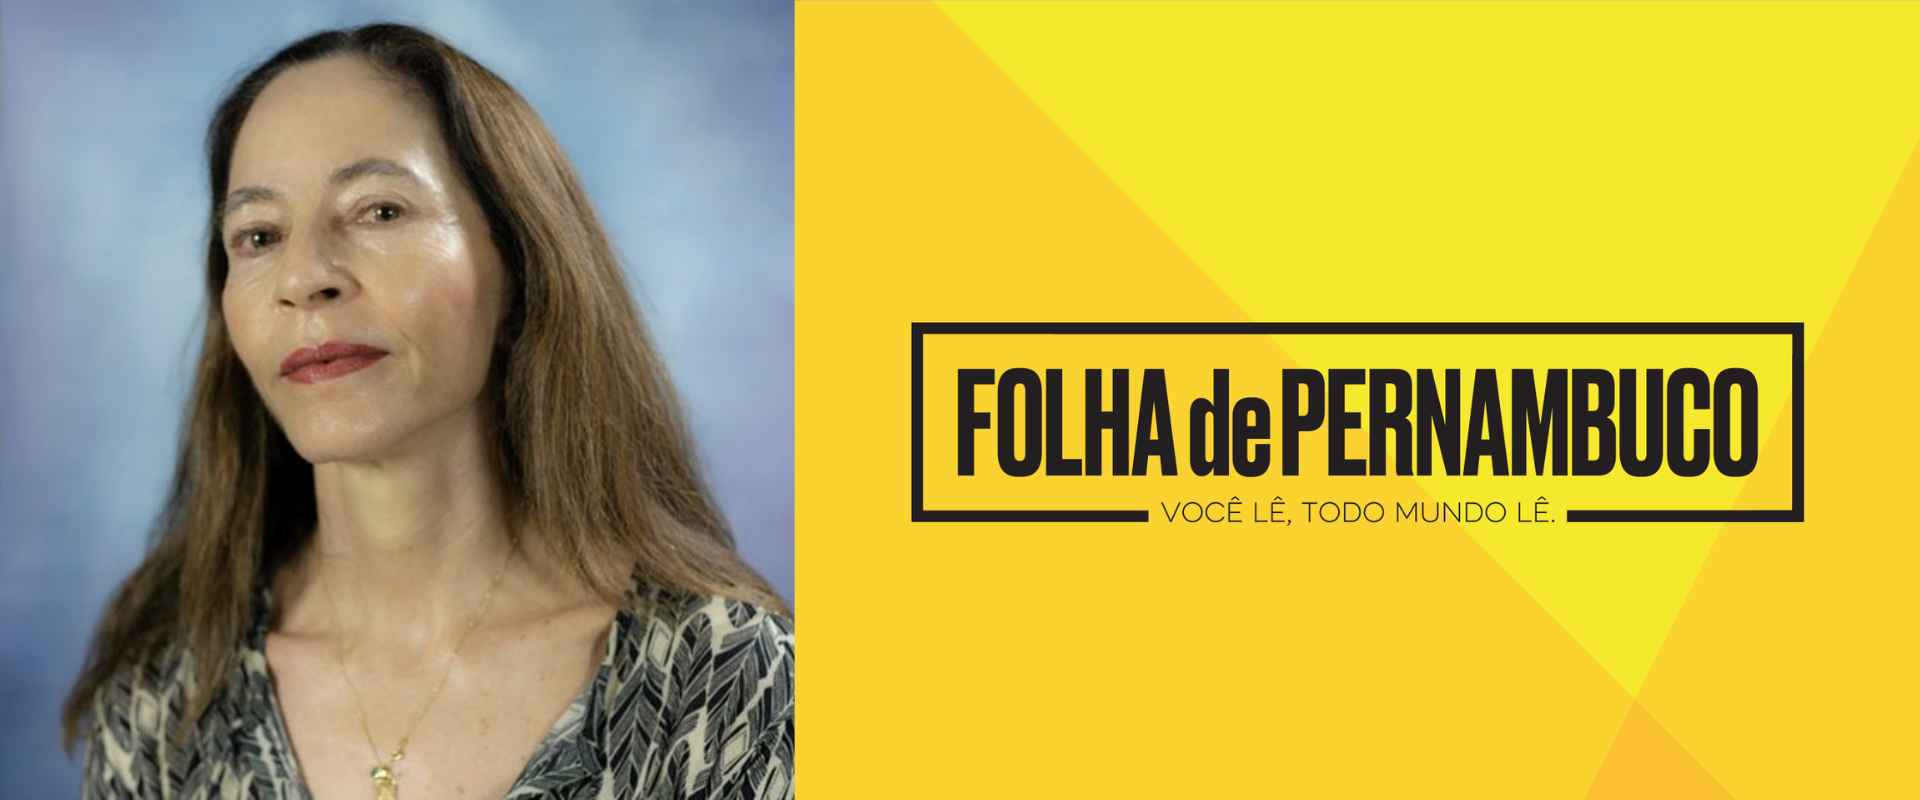 Em depoimento ao Folha de Pernambuco, a professora Margarida Gutierrez comenta sobre o novo relatório de arcabouço fiscal.